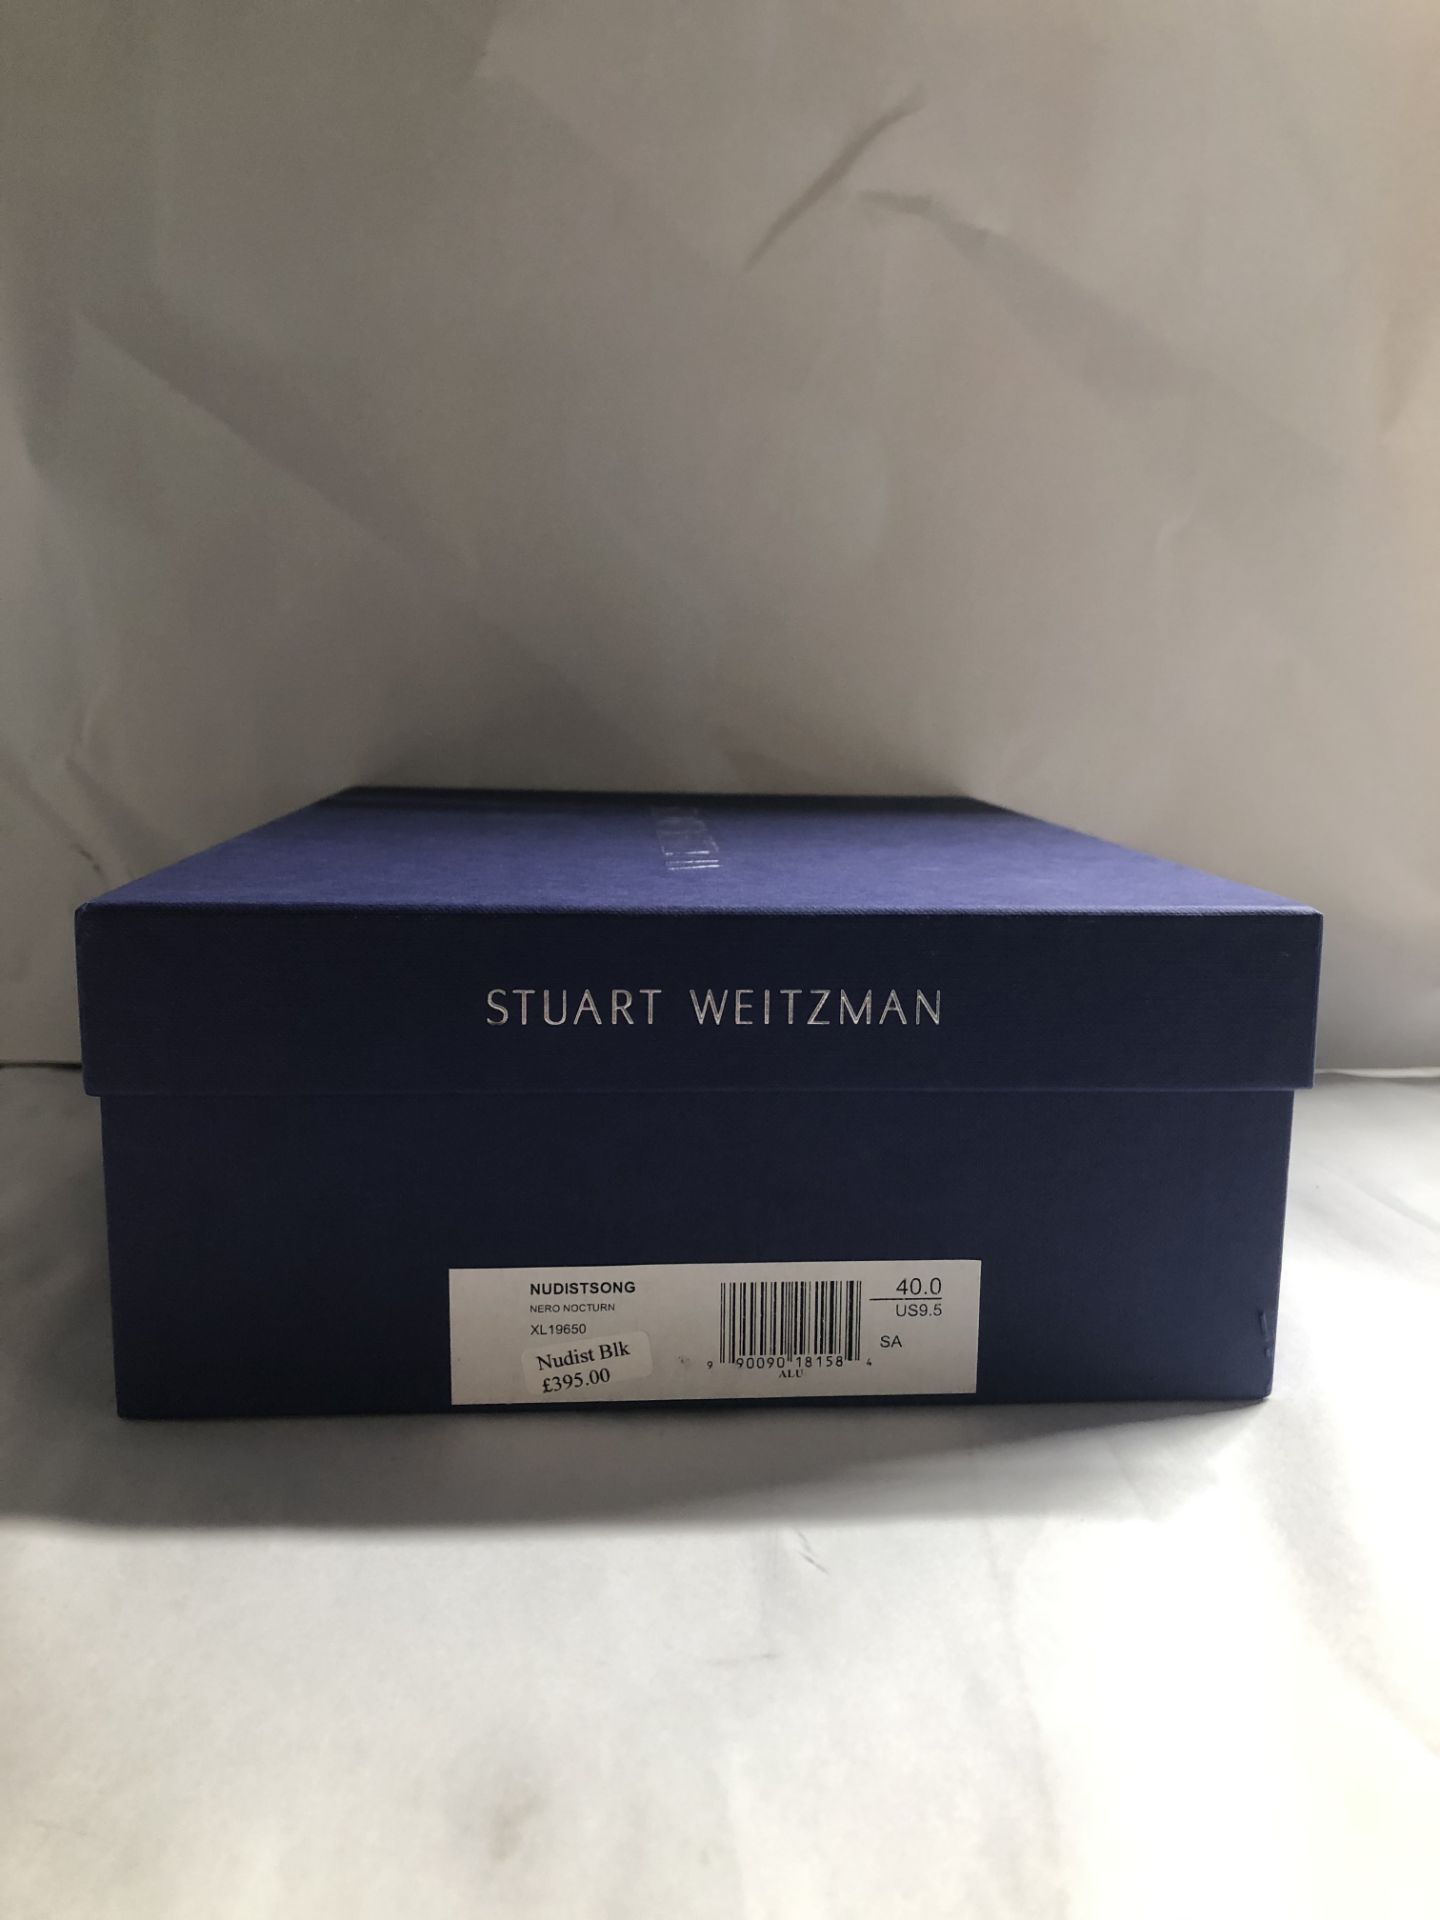 Stuart Weitzman Nudistsong Heels. EU 40 RRP £345.00 - Image 2 of 2